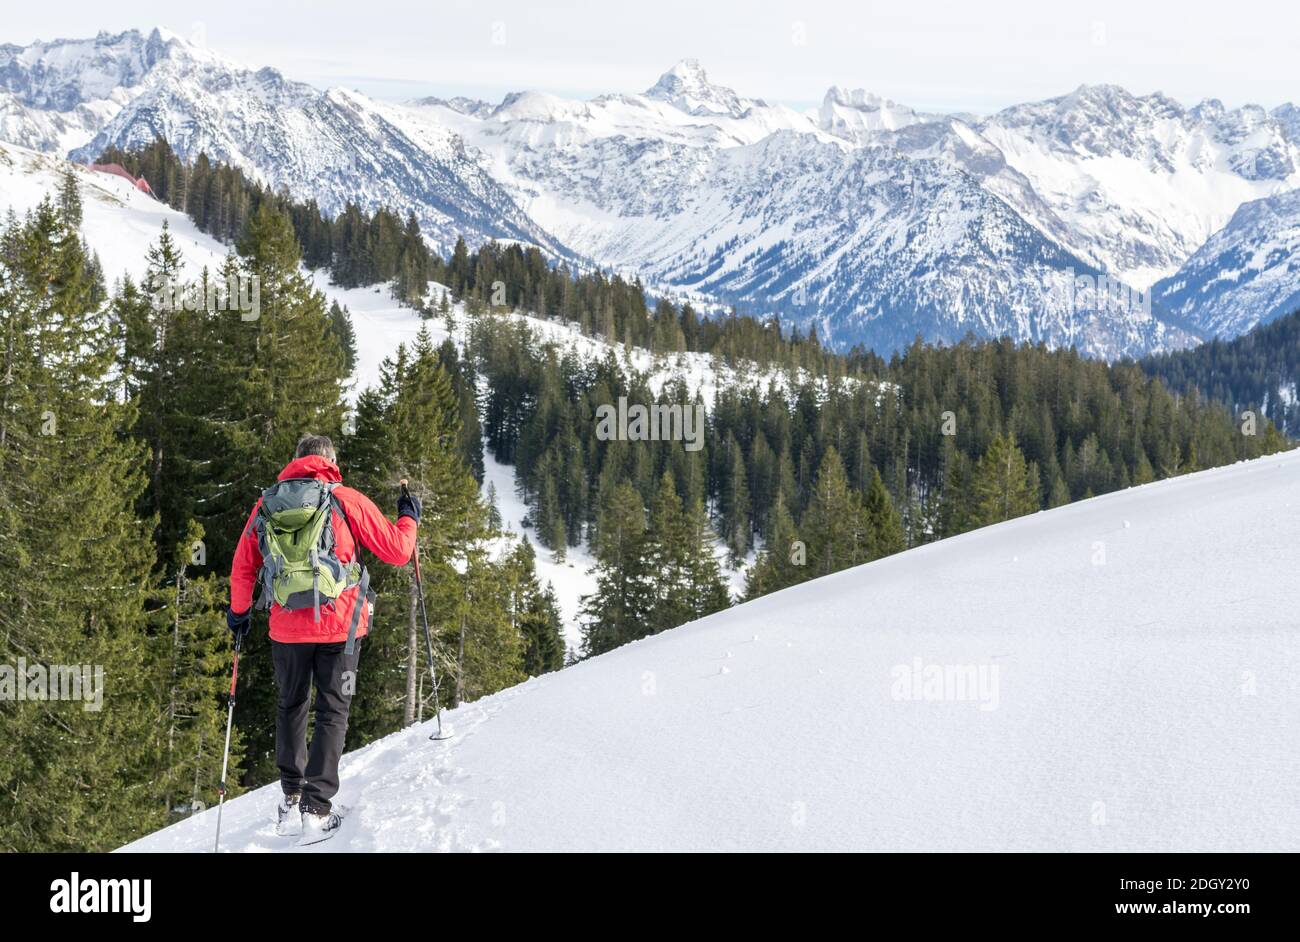 Senior Mann ist Schneeschuhwandern in alpinen Schnee Winter Berge. Allgau, Bayern, Deutschland. Stockfoto